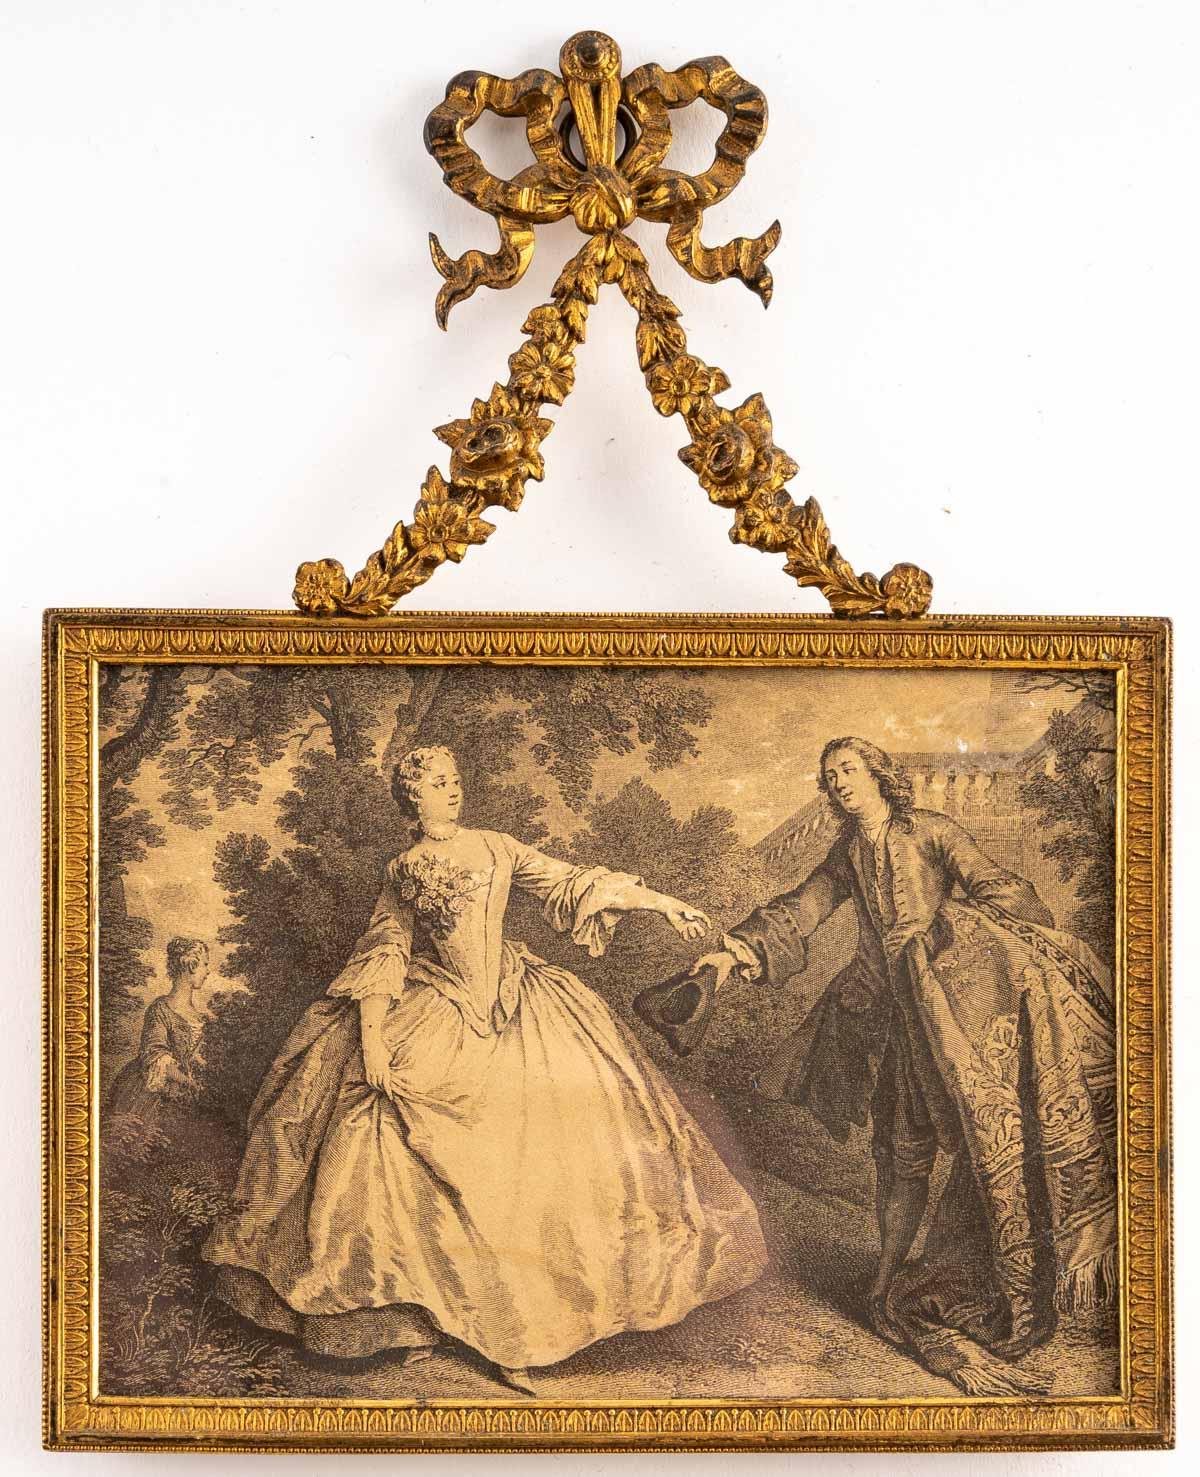 Pair of Louis XV style gilt bronze frames, 19th century.
Measures: H: 19.5 cm, W: 15 cm, D: 1.5 cm.